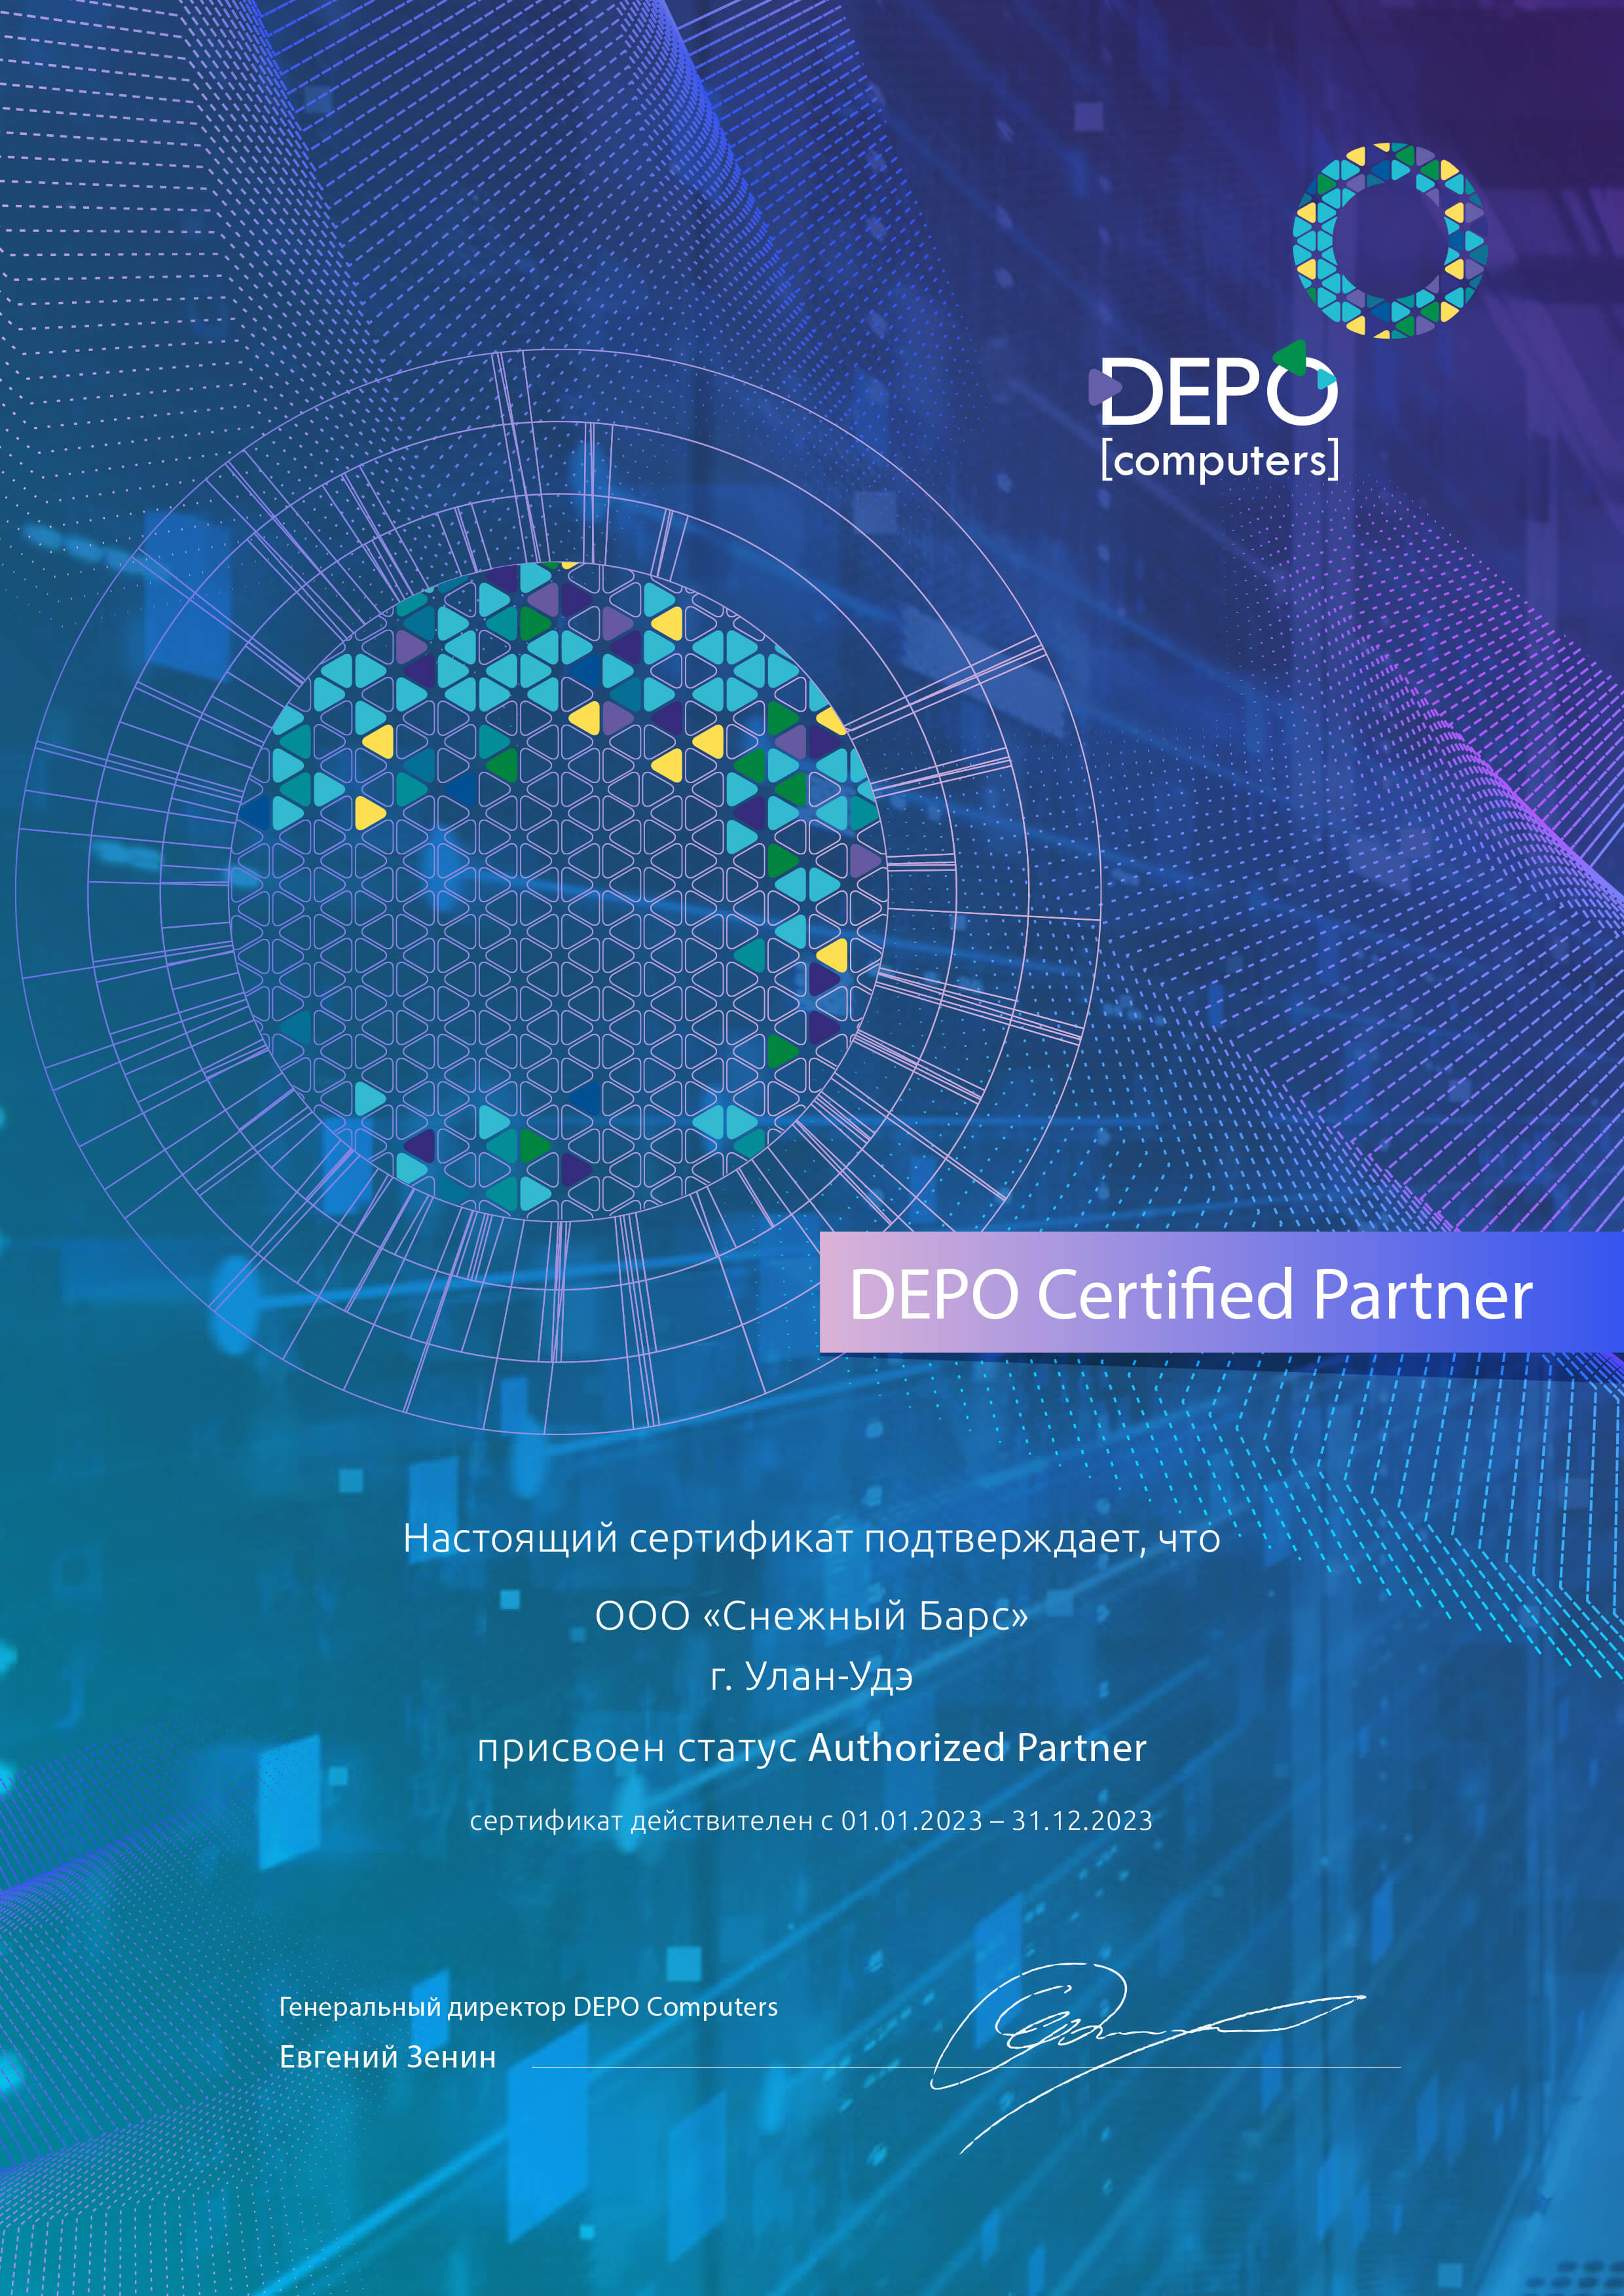 Сертификат авторизованного партнера DEPO Computers